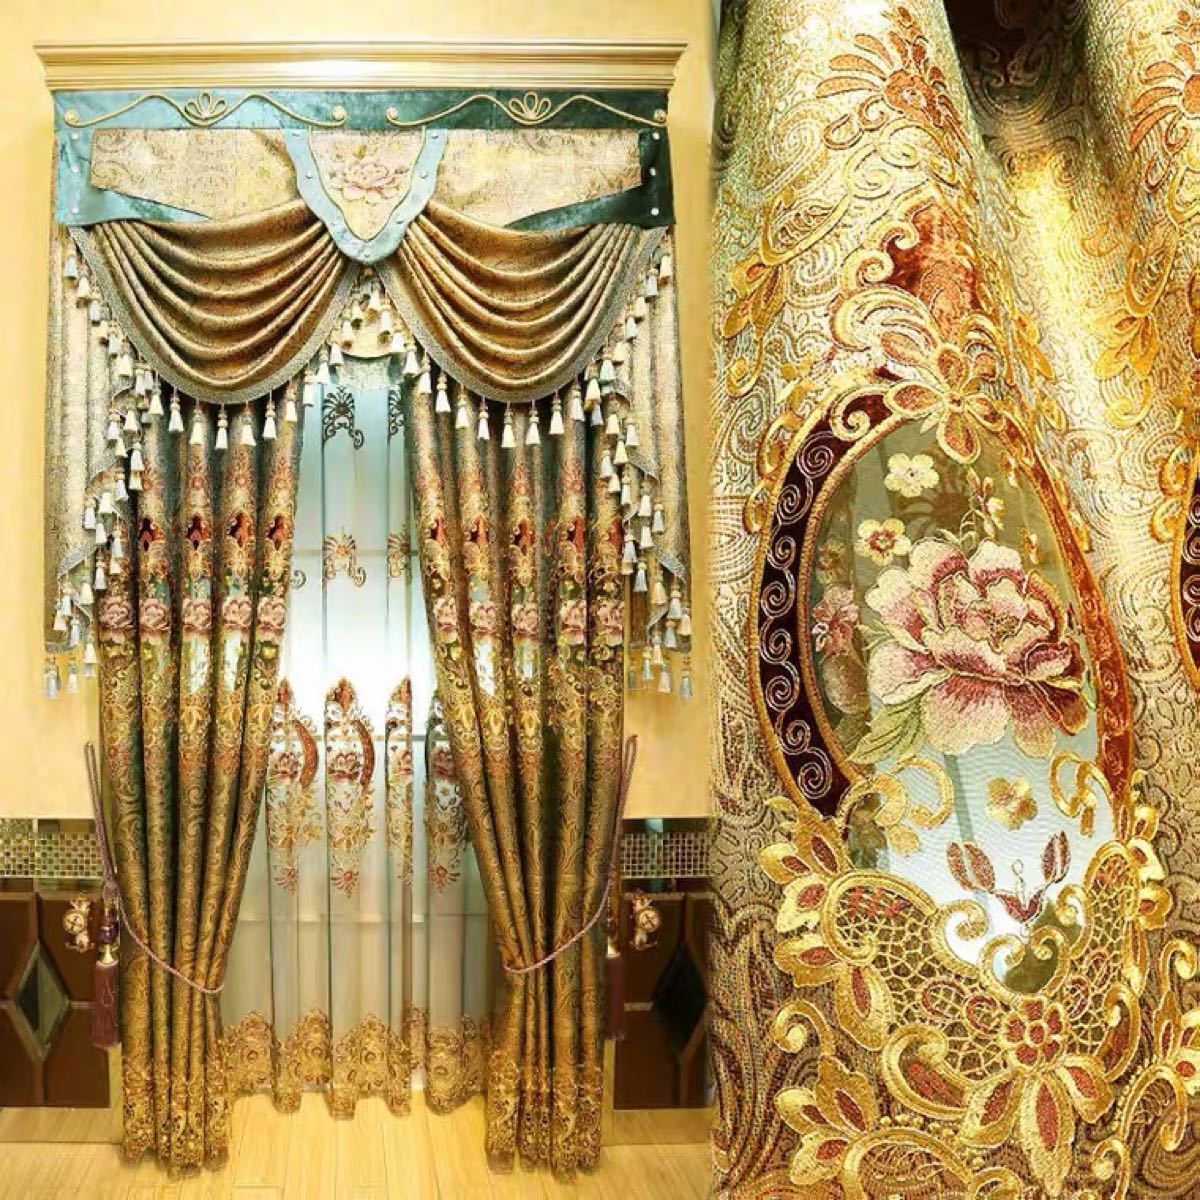 ドレープカーテン レースカーテン オーダーサイズ ゴールド 花柄 ゴージャス きれい おしゃれ カーテン幅 縦 ヨーロッパ風